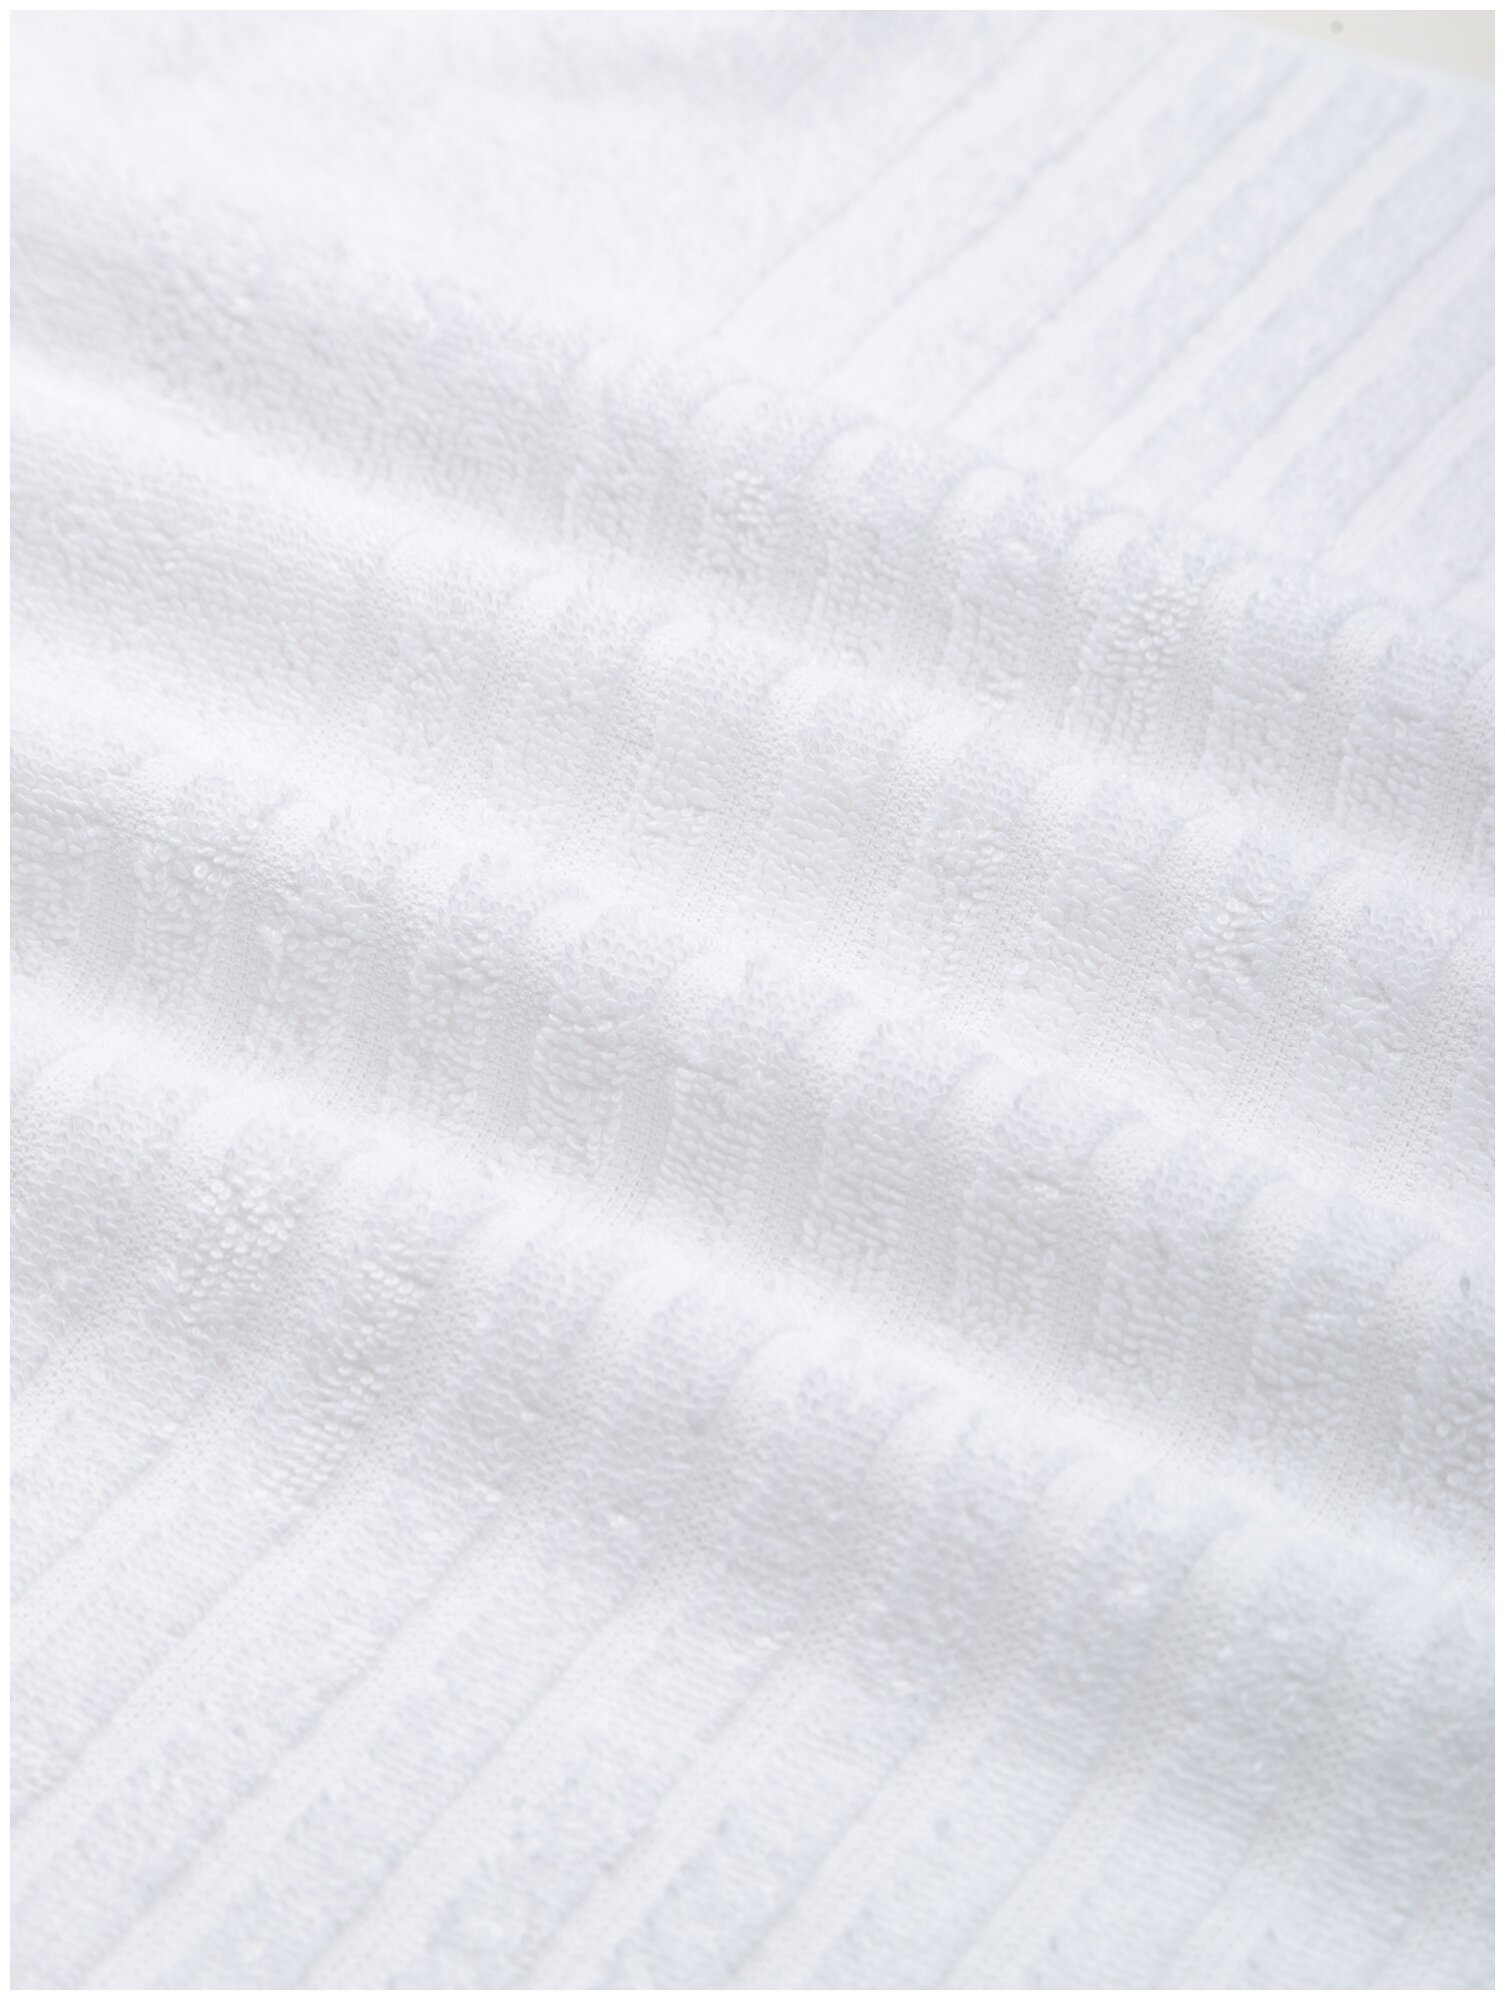 Салфетка махровая, полотенце для лица и рук, Донецкая мануфактура, 30Х50 см,цвет:белый, 100% хлопок - фотография № 2